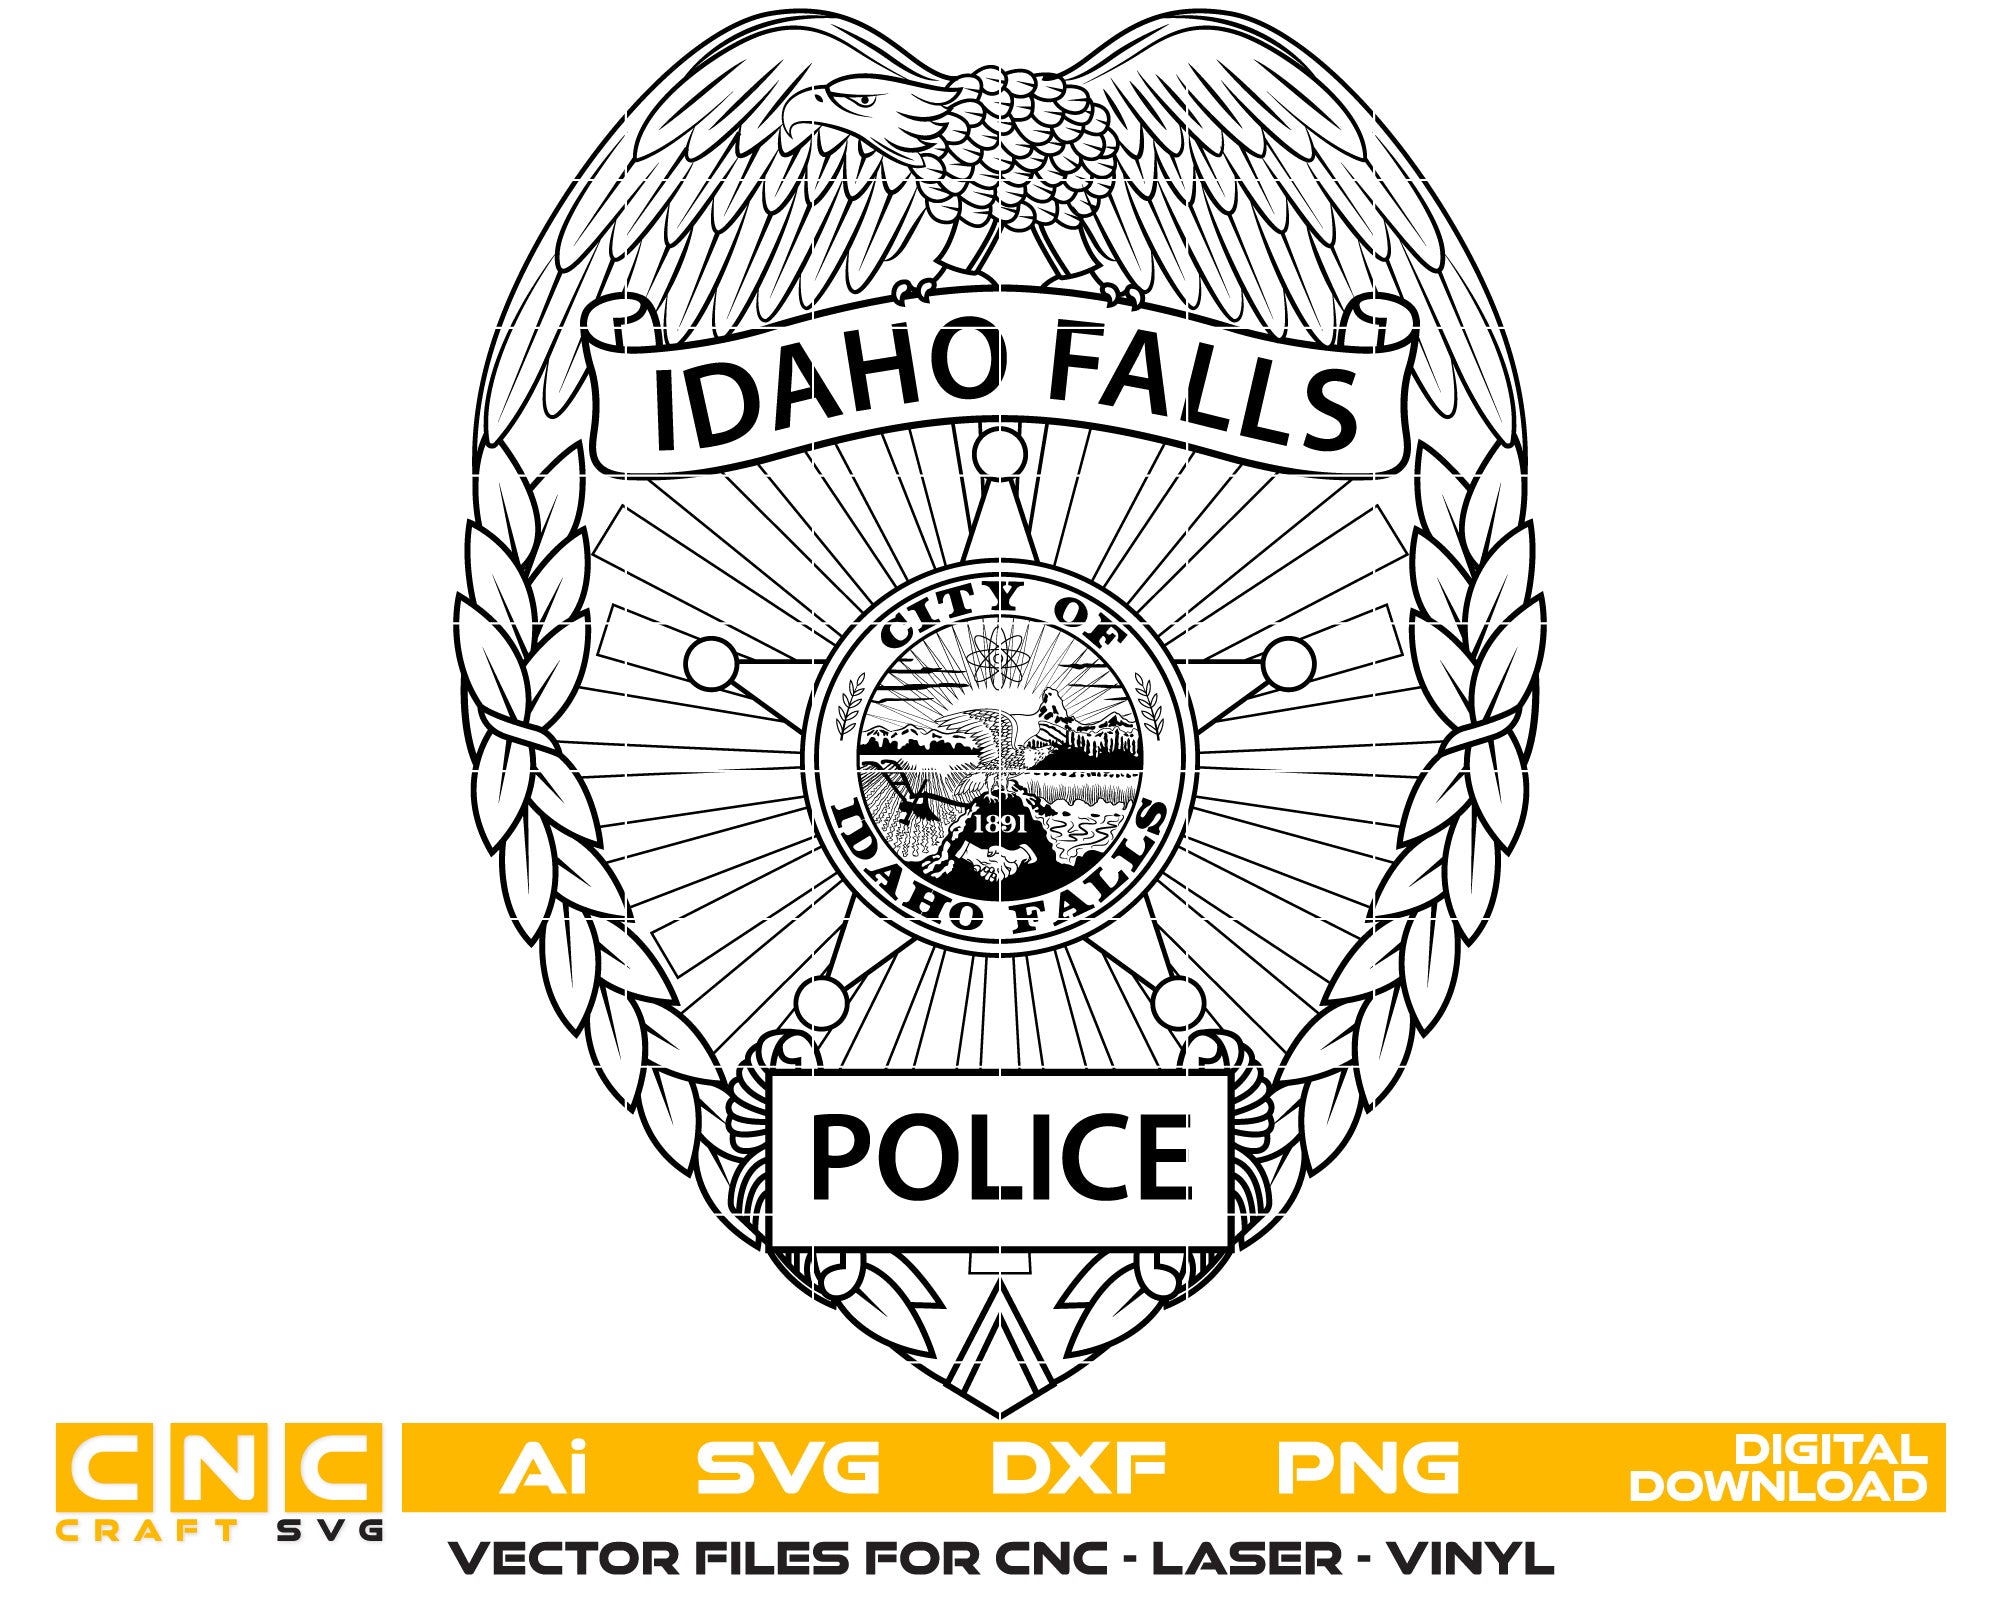 City of Idaho Falls Police Badge Vector Art, Ai,SVG, DXF, PNG, Digital Files